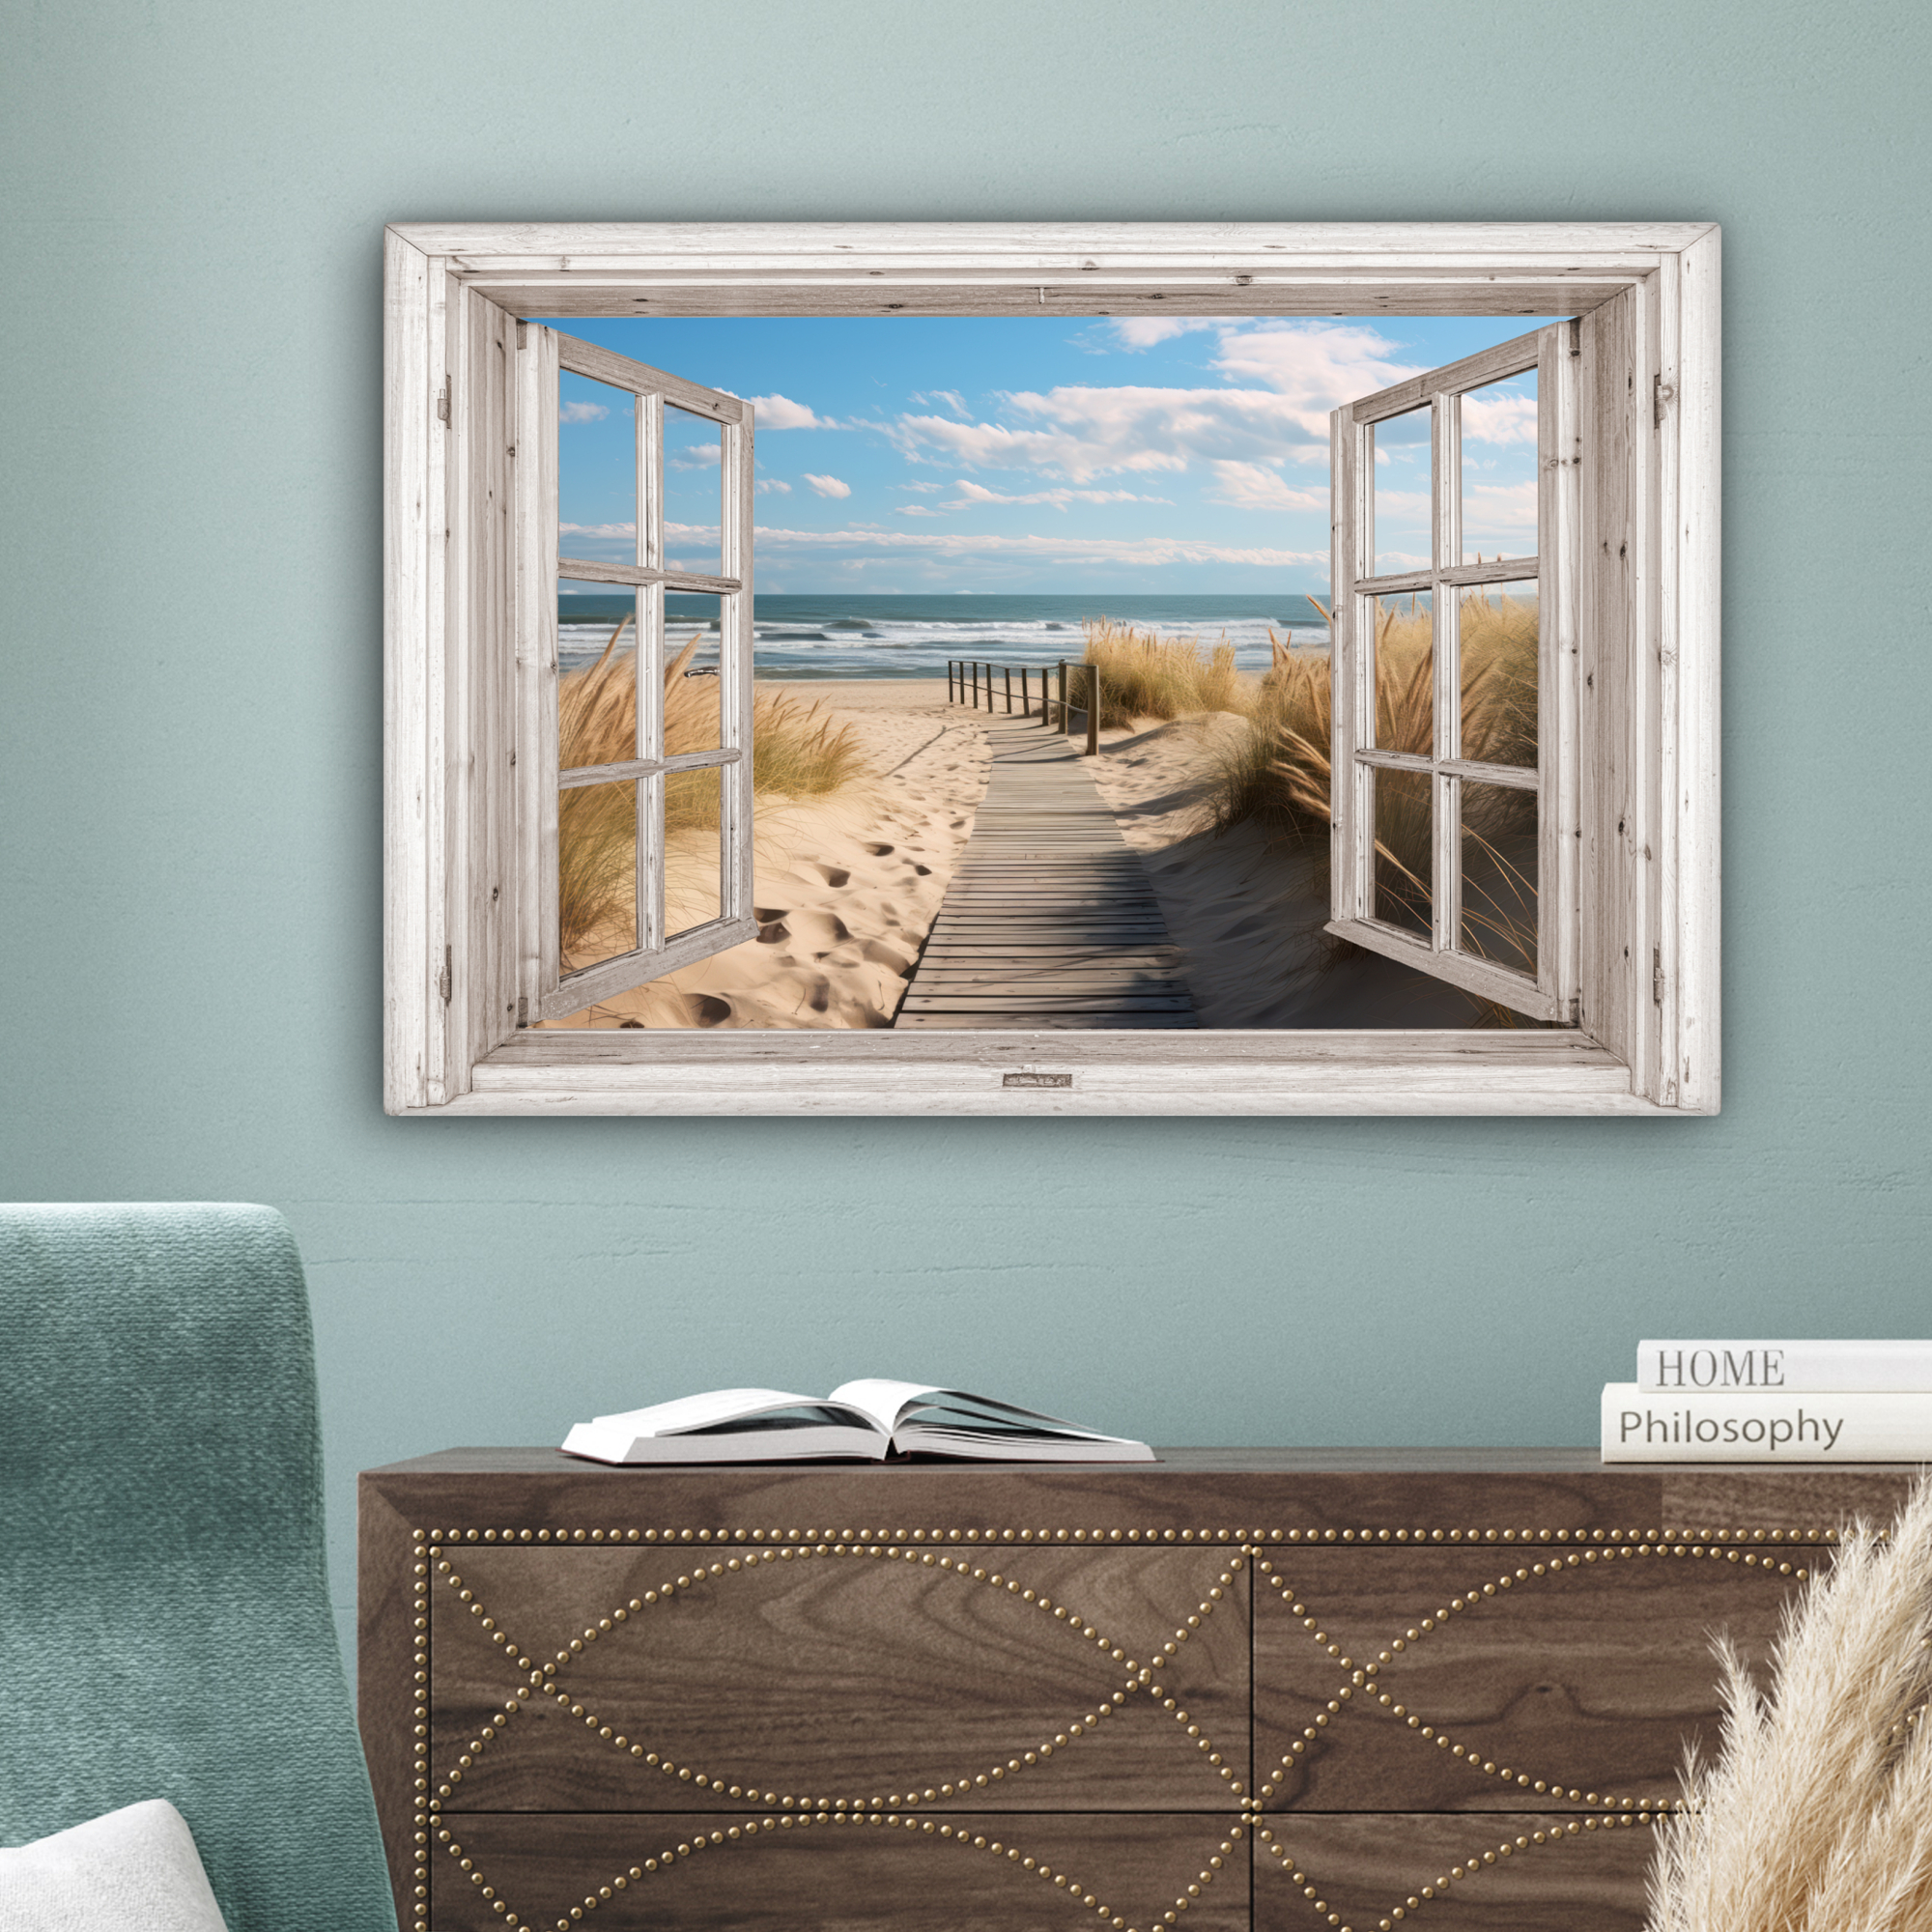 Tableau sur toile - Fenêtre - Mer - Côte - Nature - Vue à travers - Plage - Mer des Wadden-4